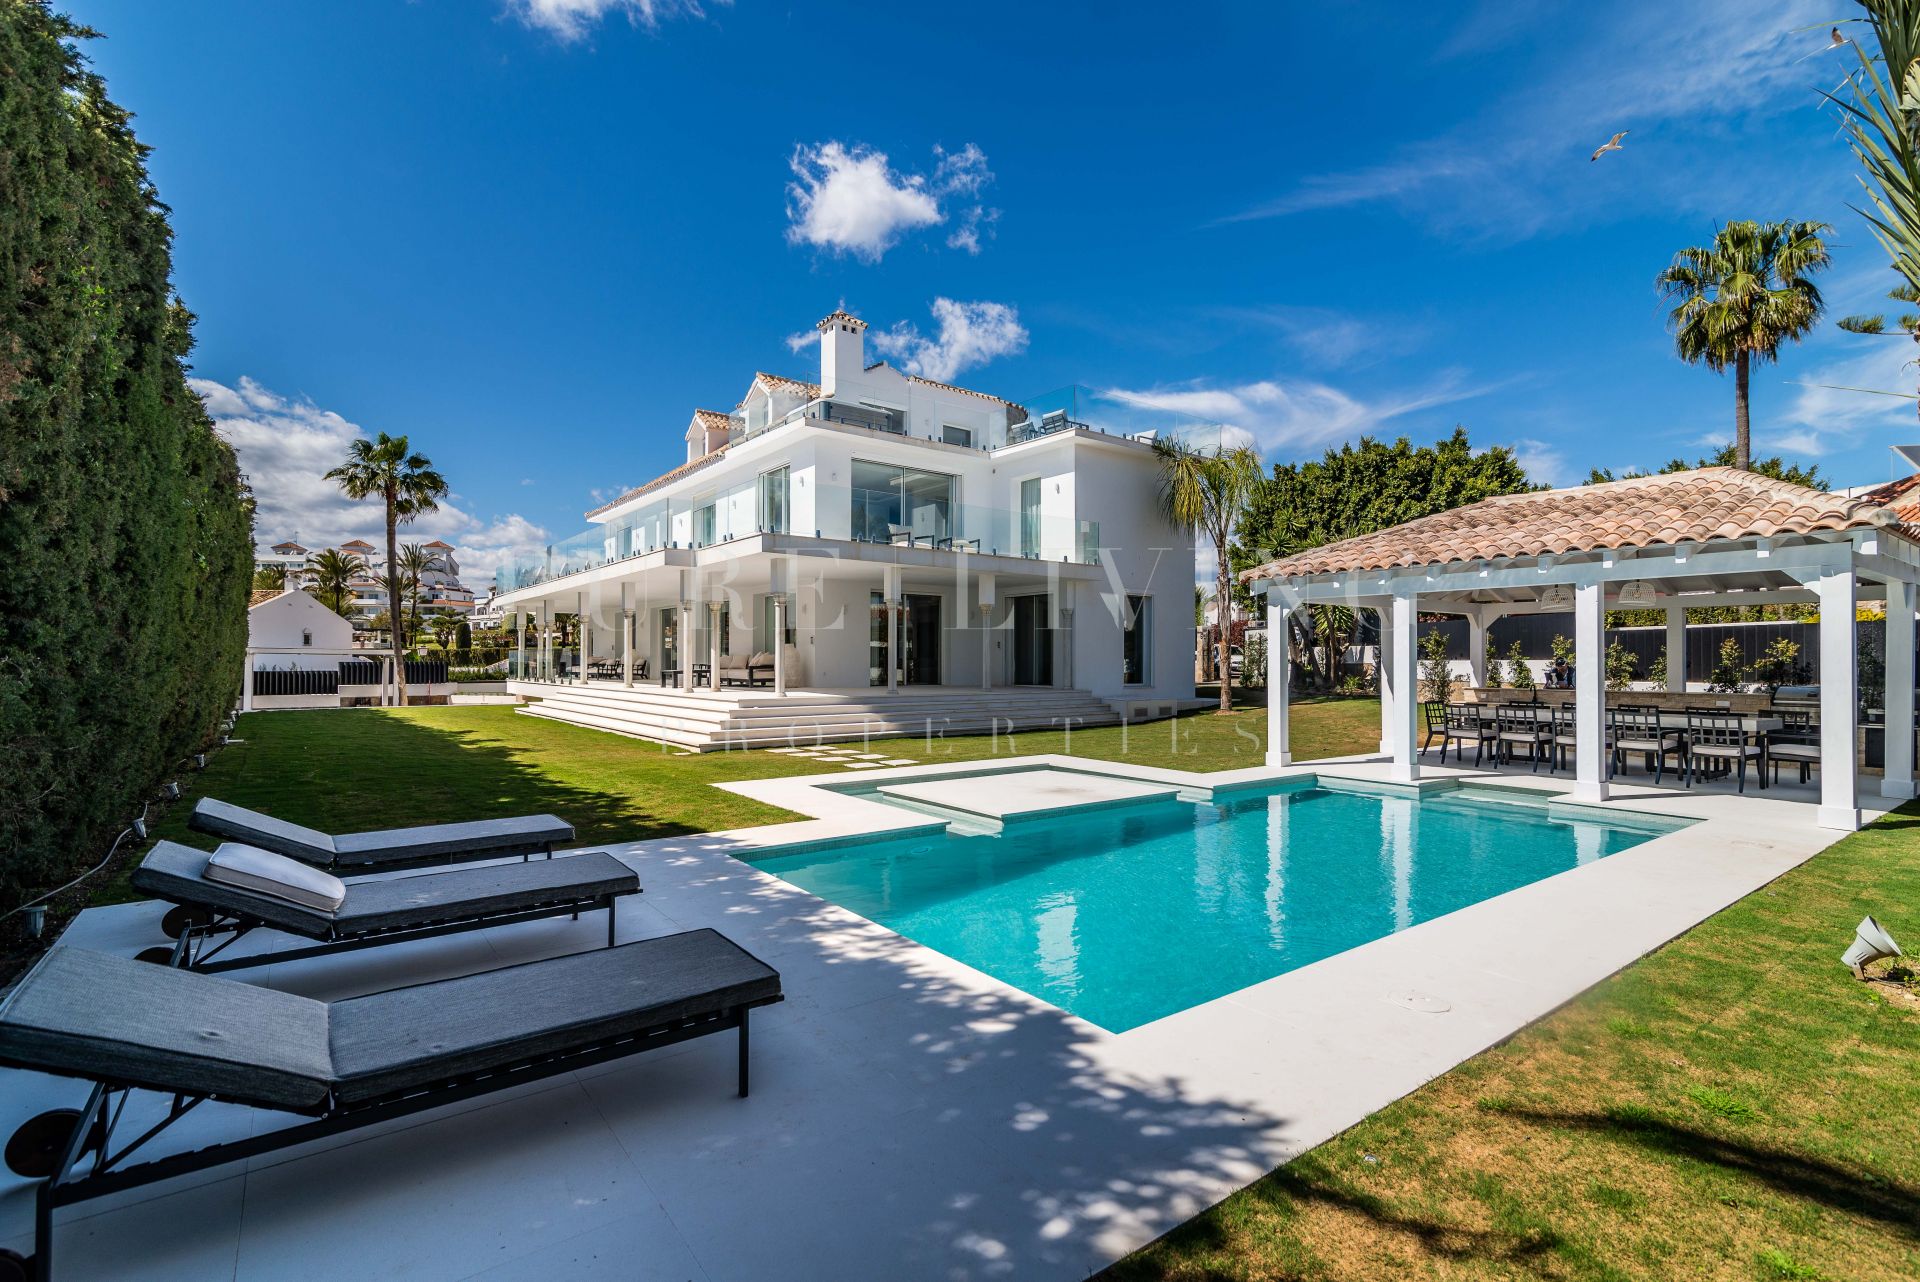 Excellent villa with breathtaking sea views